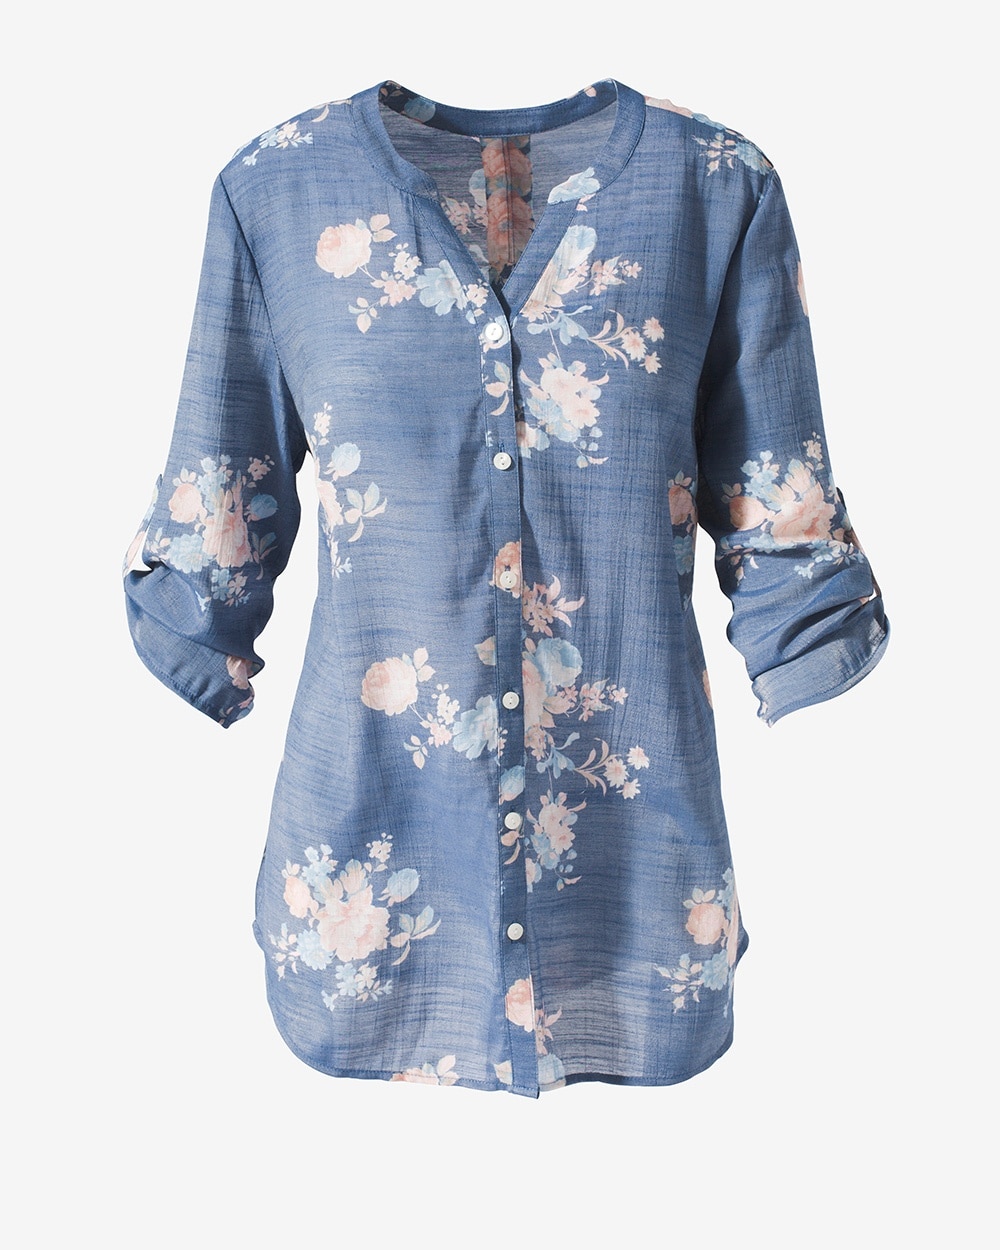 Raining Florals Button-Up Shirt